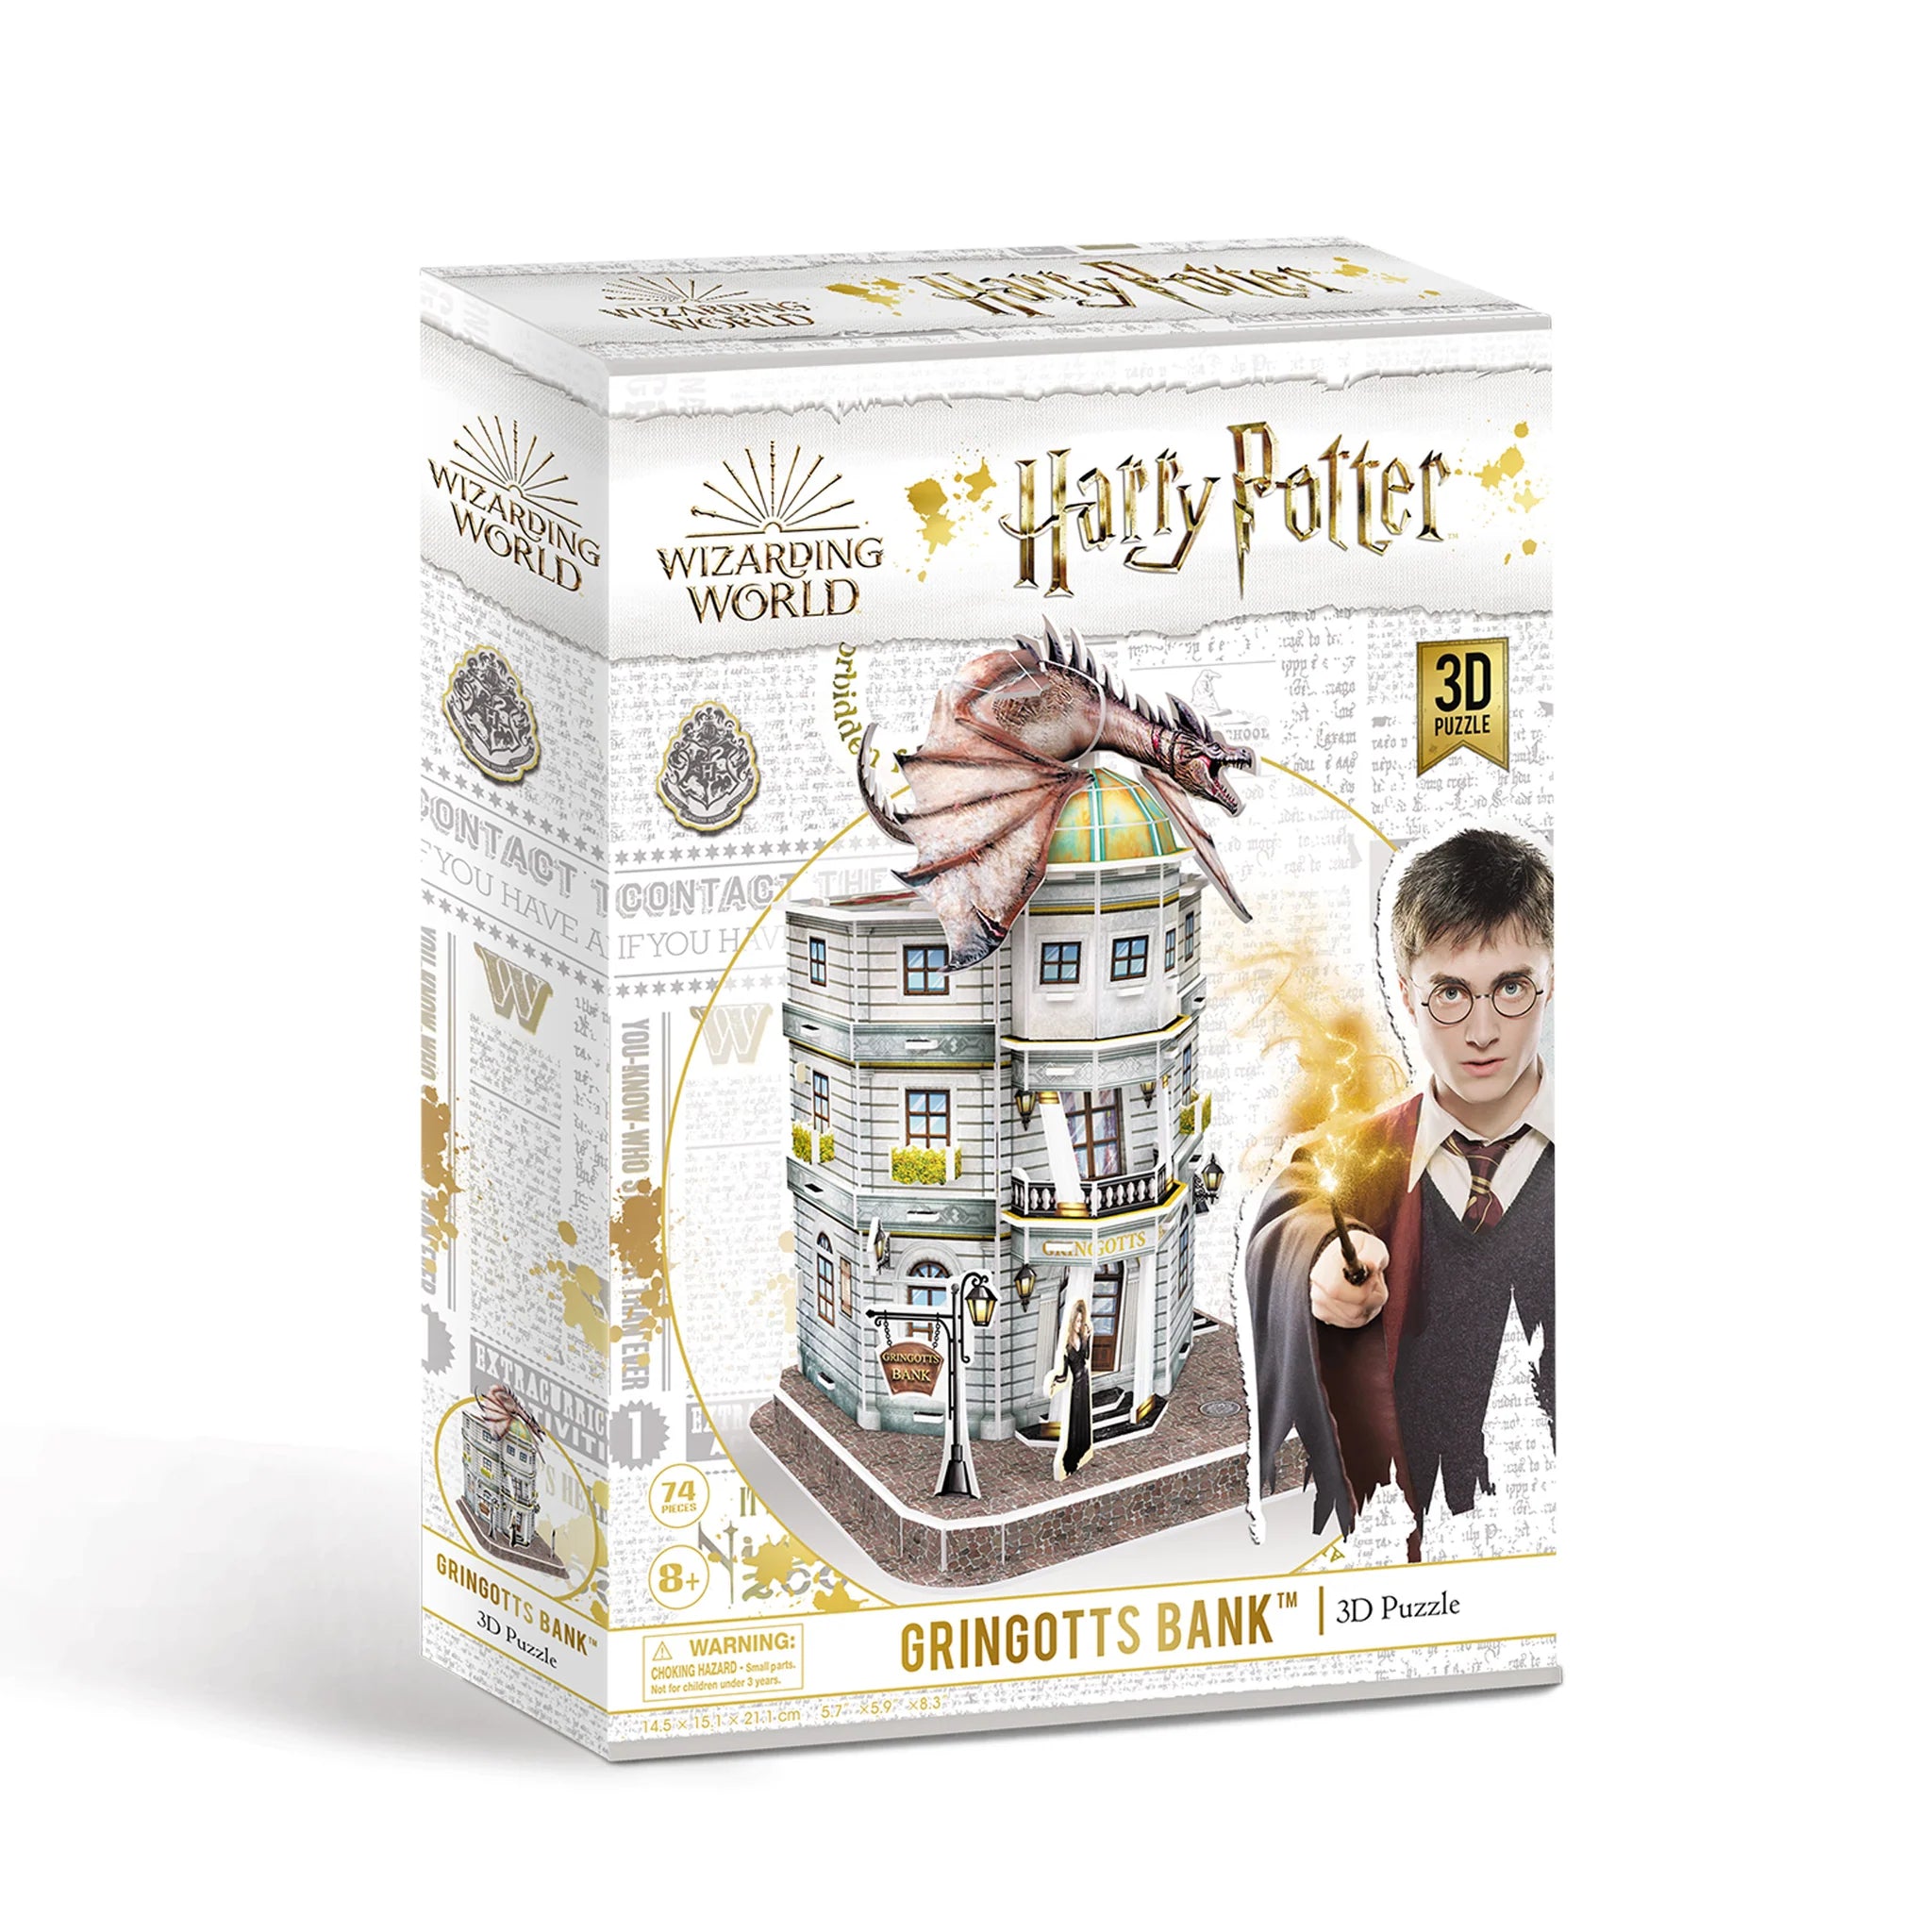 Harry Potter Gringotts Bank 3D Jigsaw Puzzle